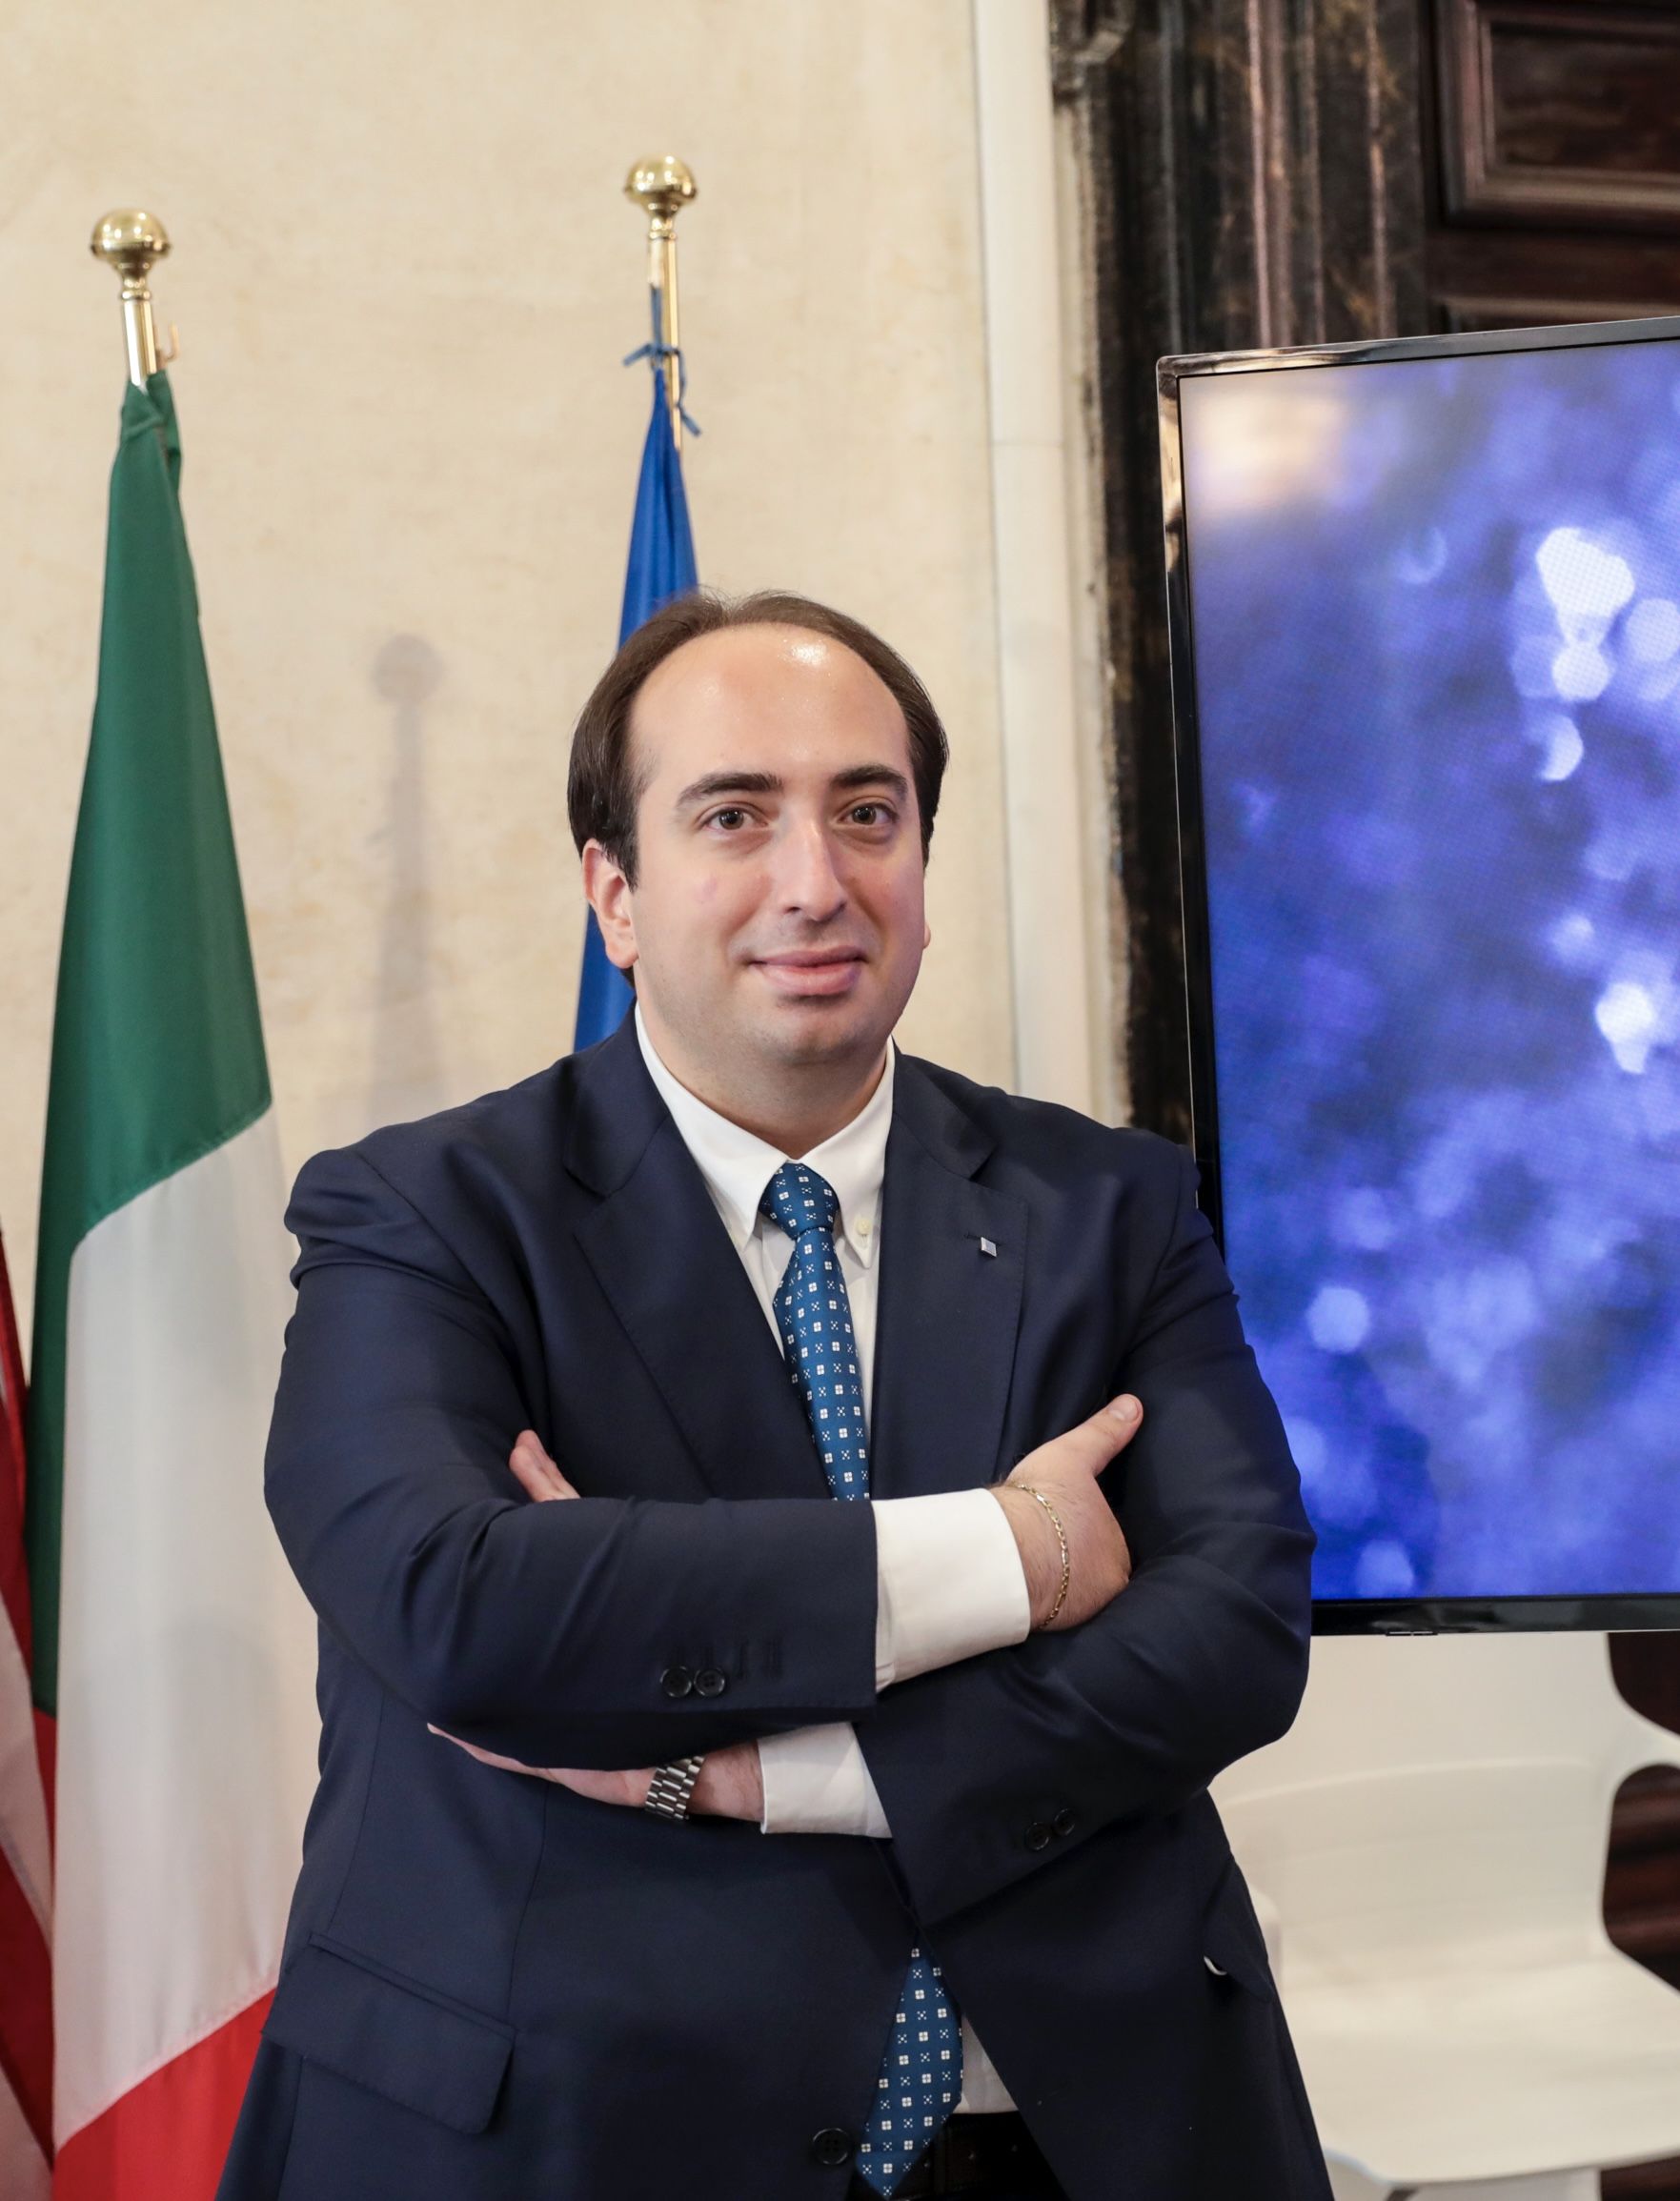 Gabriele Ferrieri predsjednik je Nacionalne udruge mladih inovatora